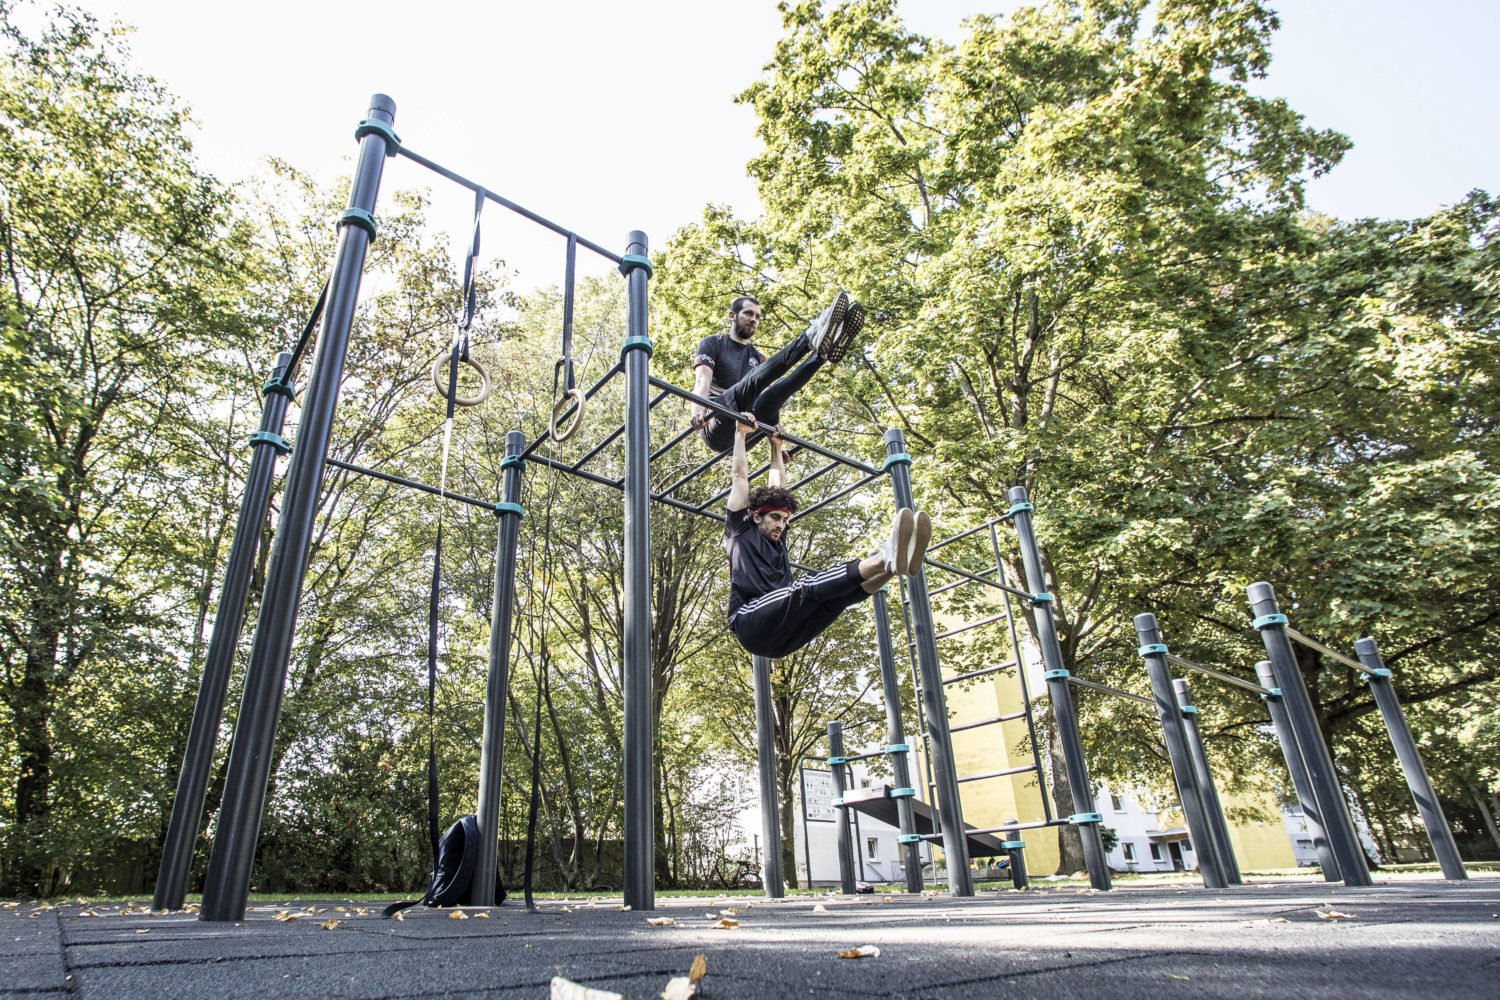 Calisthenic Parks bieten Anfänger*innen als auch Fortgeschrittenen viele Trainingsmöglichkeiten. Foto:imago images / Michael Schick